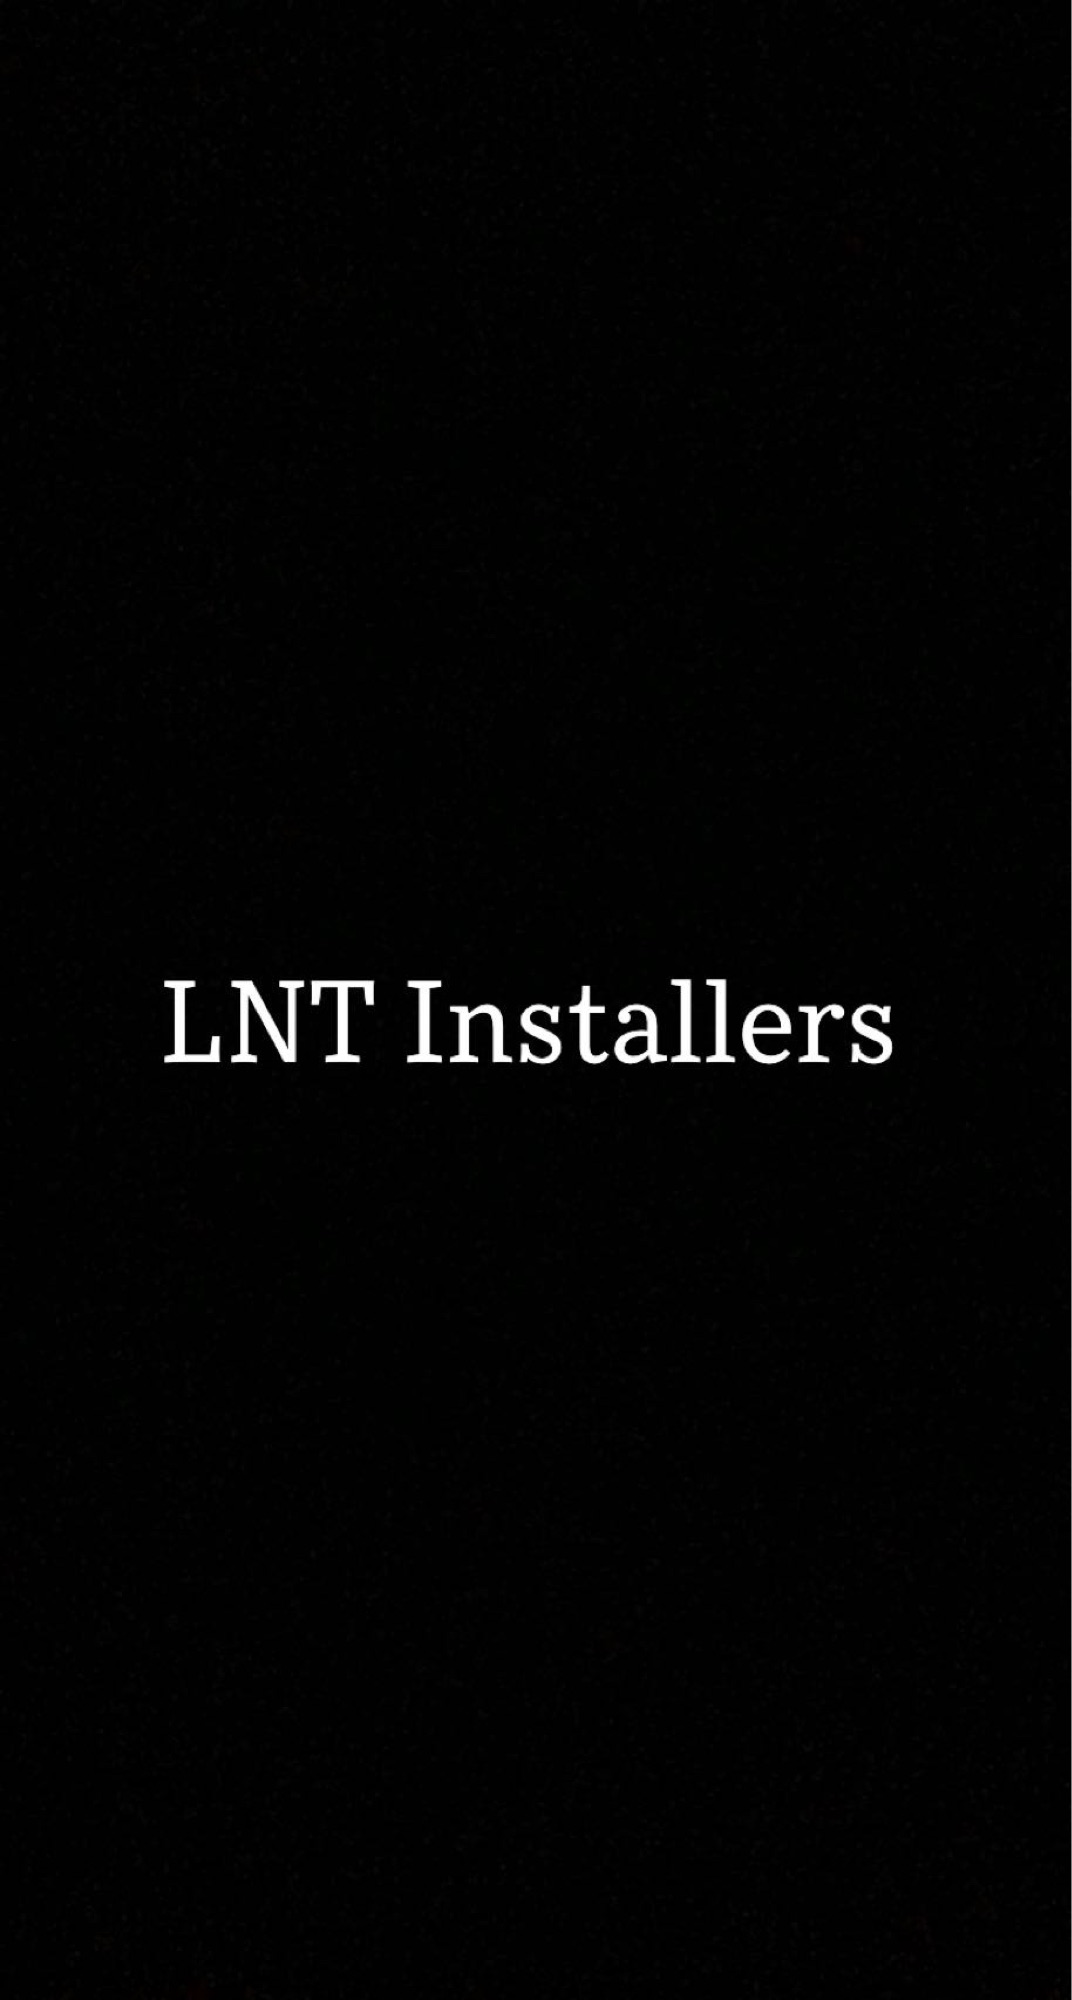 LNT Installers Logo